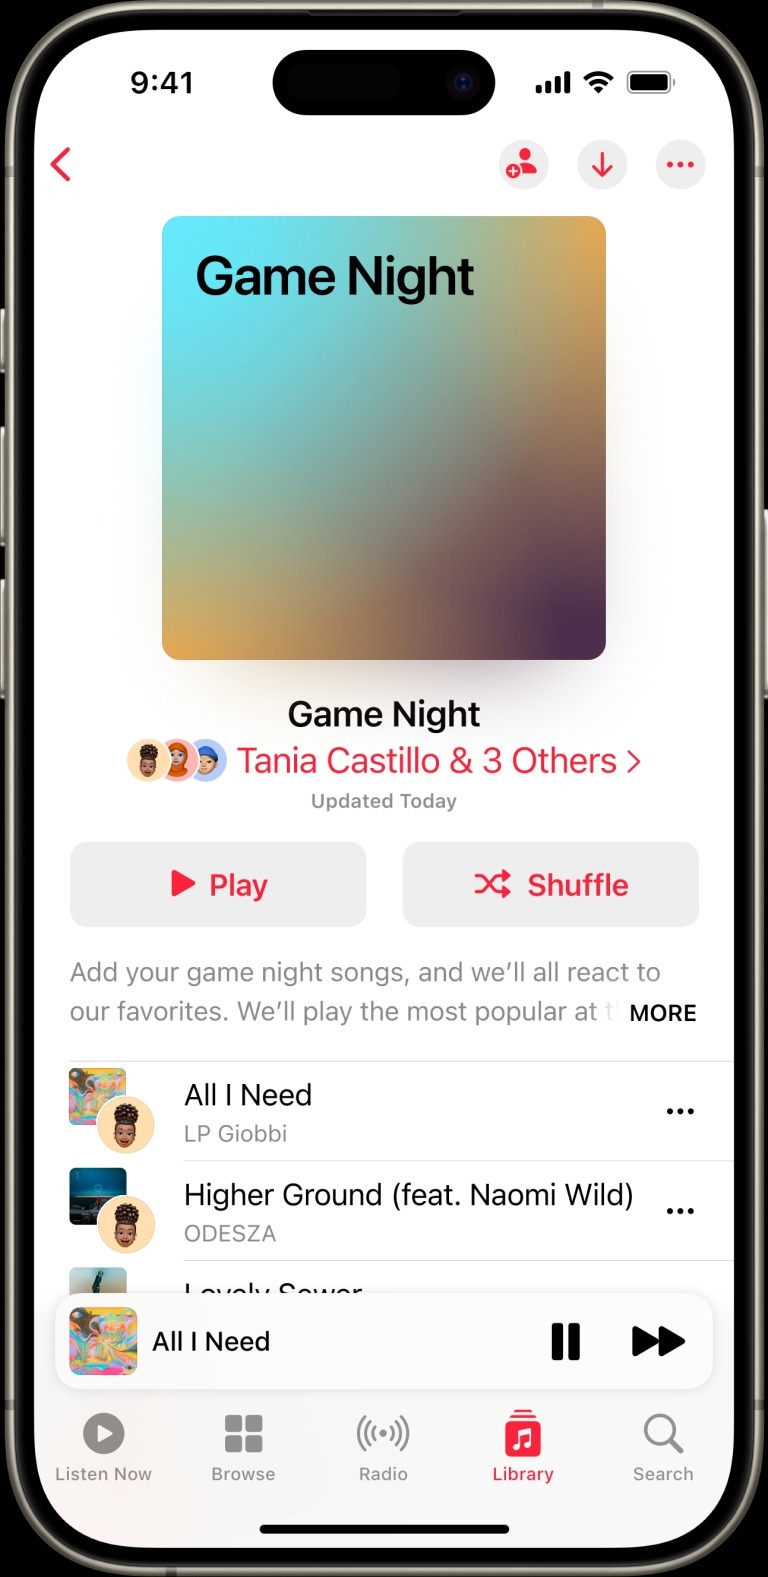 ميزة Collaborative Playlist لإنشاء قوائم تشغيل الموسيقى ضمن تحديث iOS 17.3 الجديد لهواتف آيفون - Apple